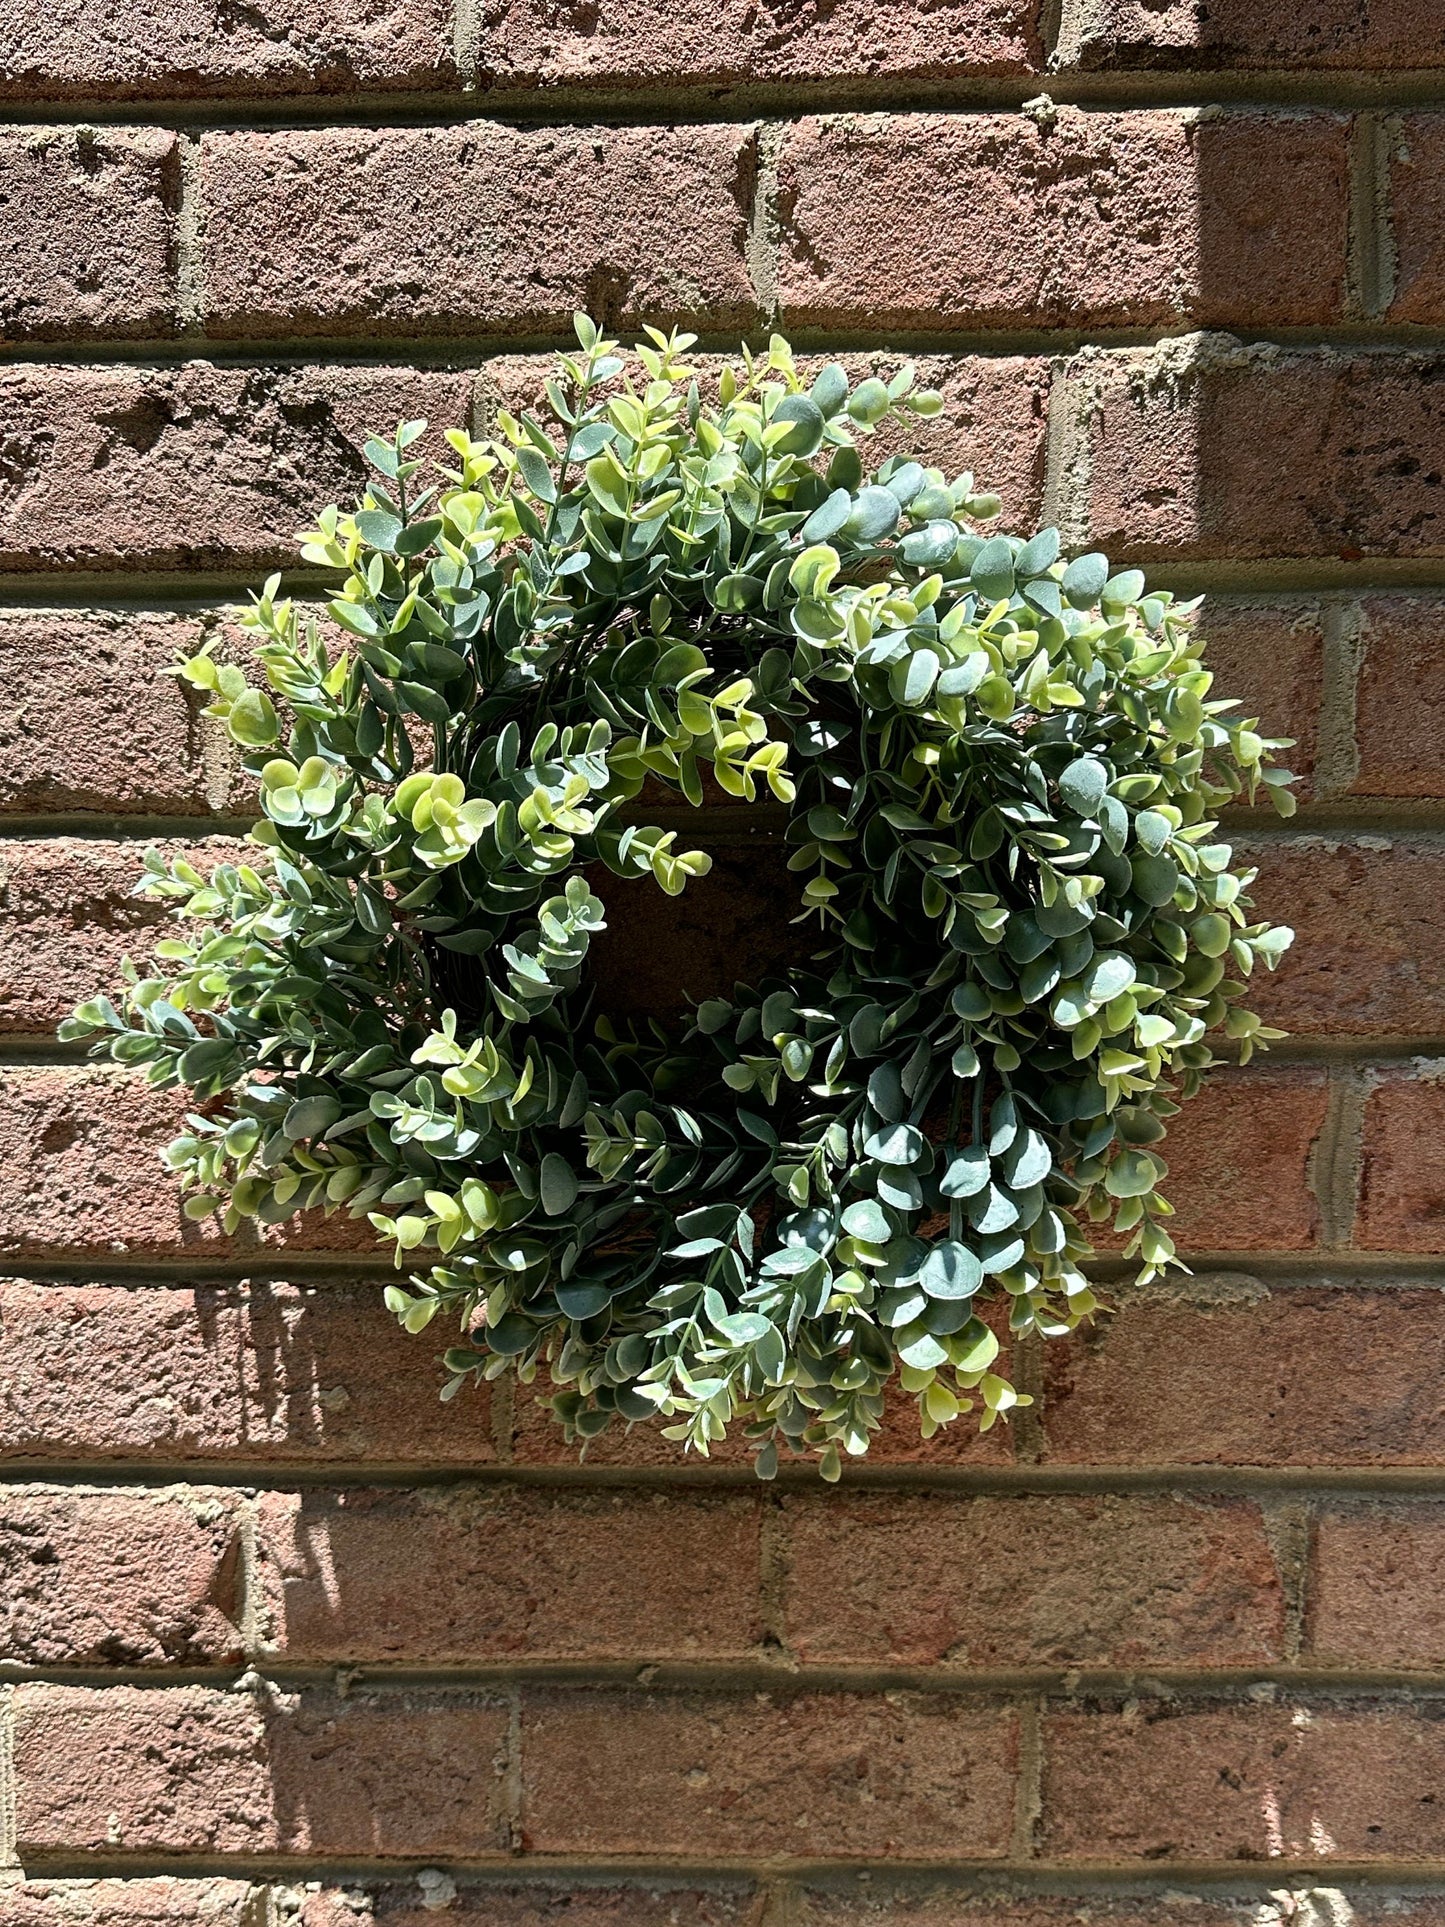 Sale/Eucalyptus Wreath, Farmhouse wreath, Mini Farmhouse Wreath, Greenery Wreath, Year Round Wreath, Wall Decor, Wreath with burlap bow